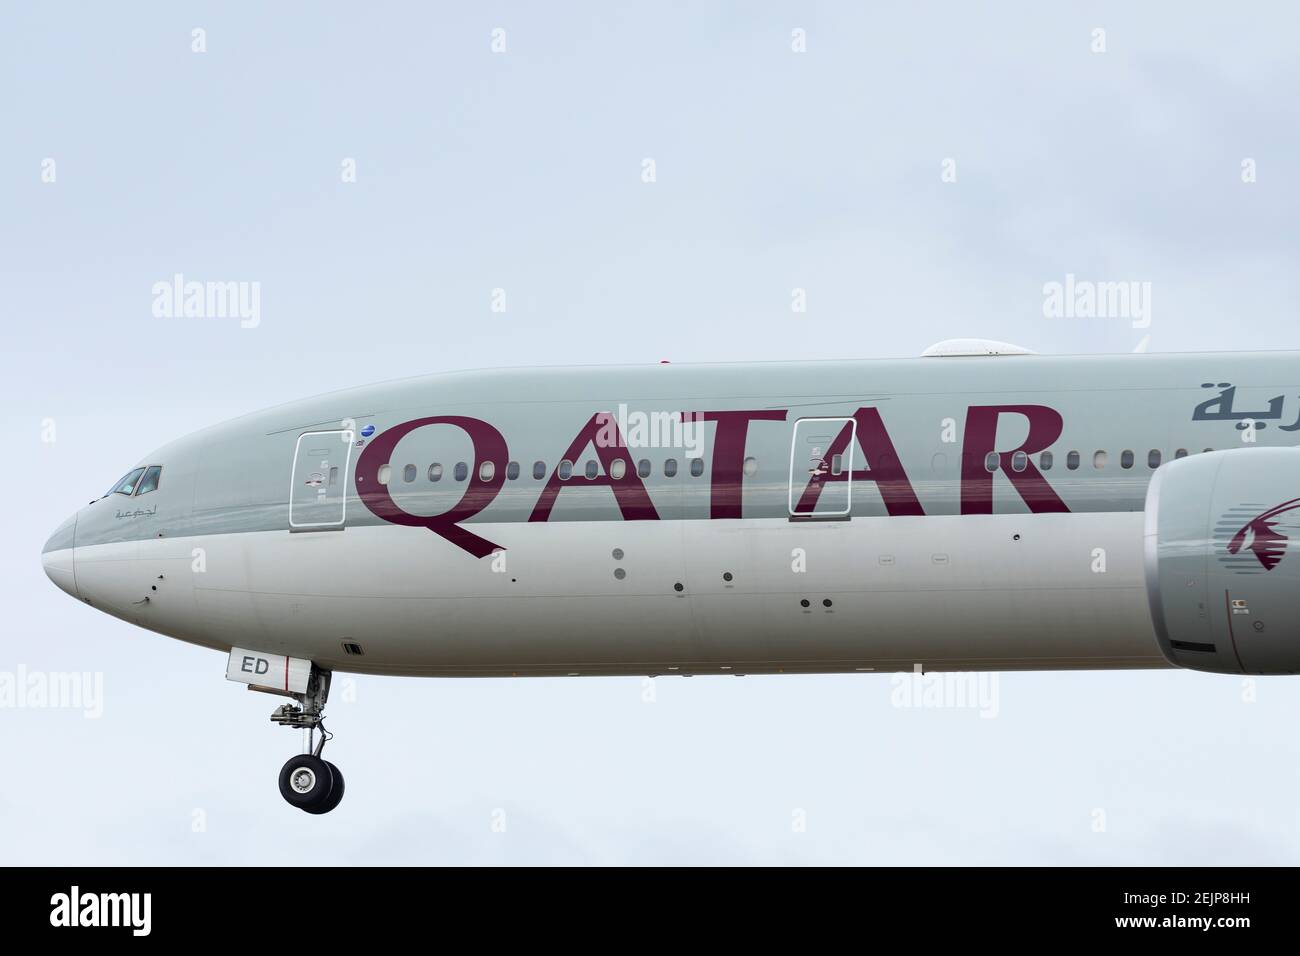 Qatar Airways Boeing 777 enregistrement A7-BED décollage le 26 septembre 2020 de l'aéroport de Londres Heathrow, Middlesex, Royaume-Uni Banque D'Images